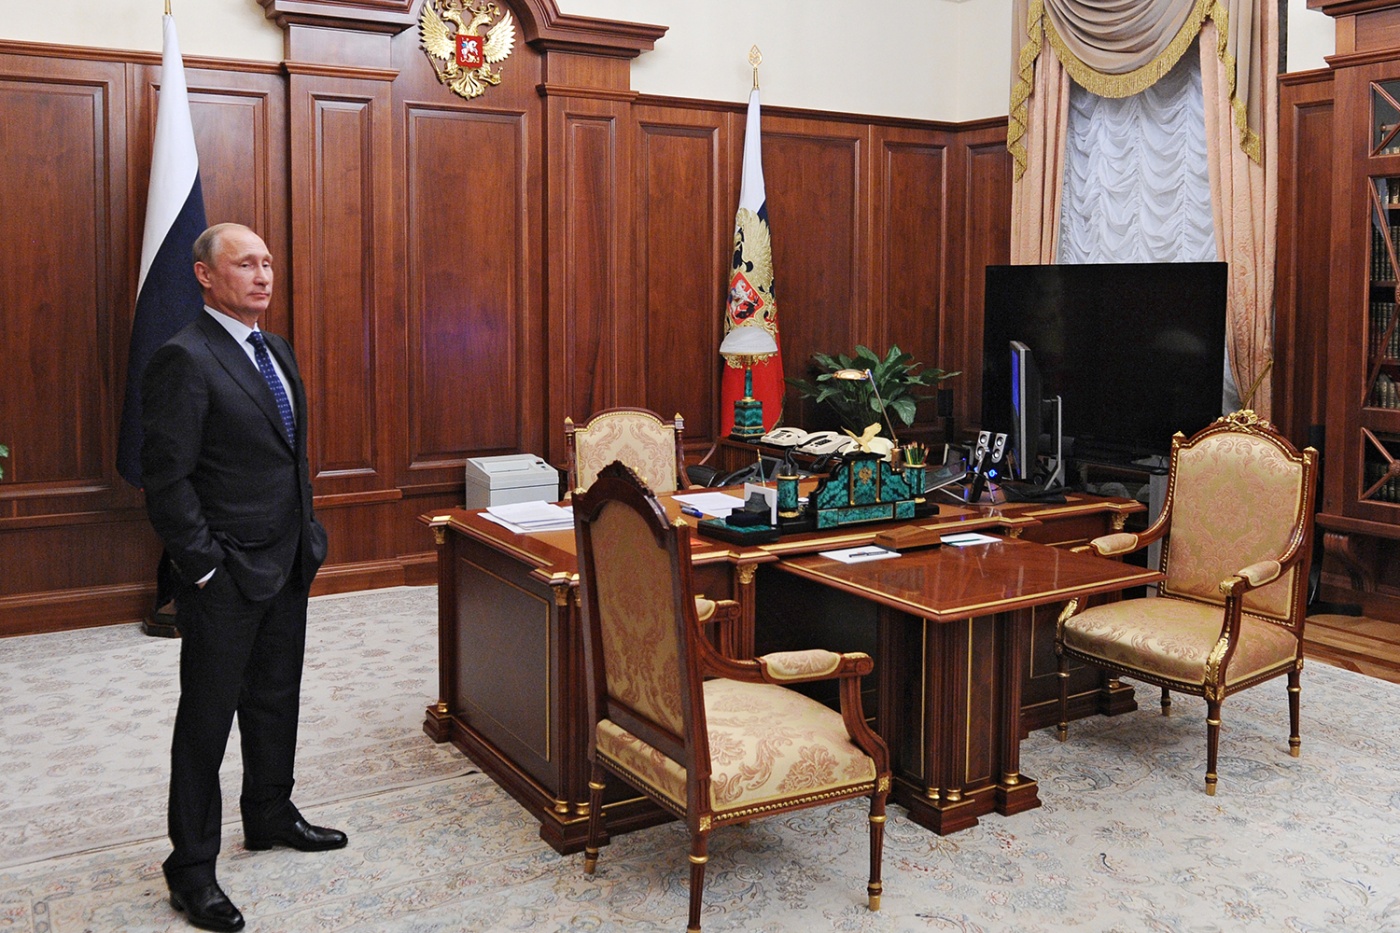 Операція "наступник": Politico склало свій список кандидатів на крісло російського президента